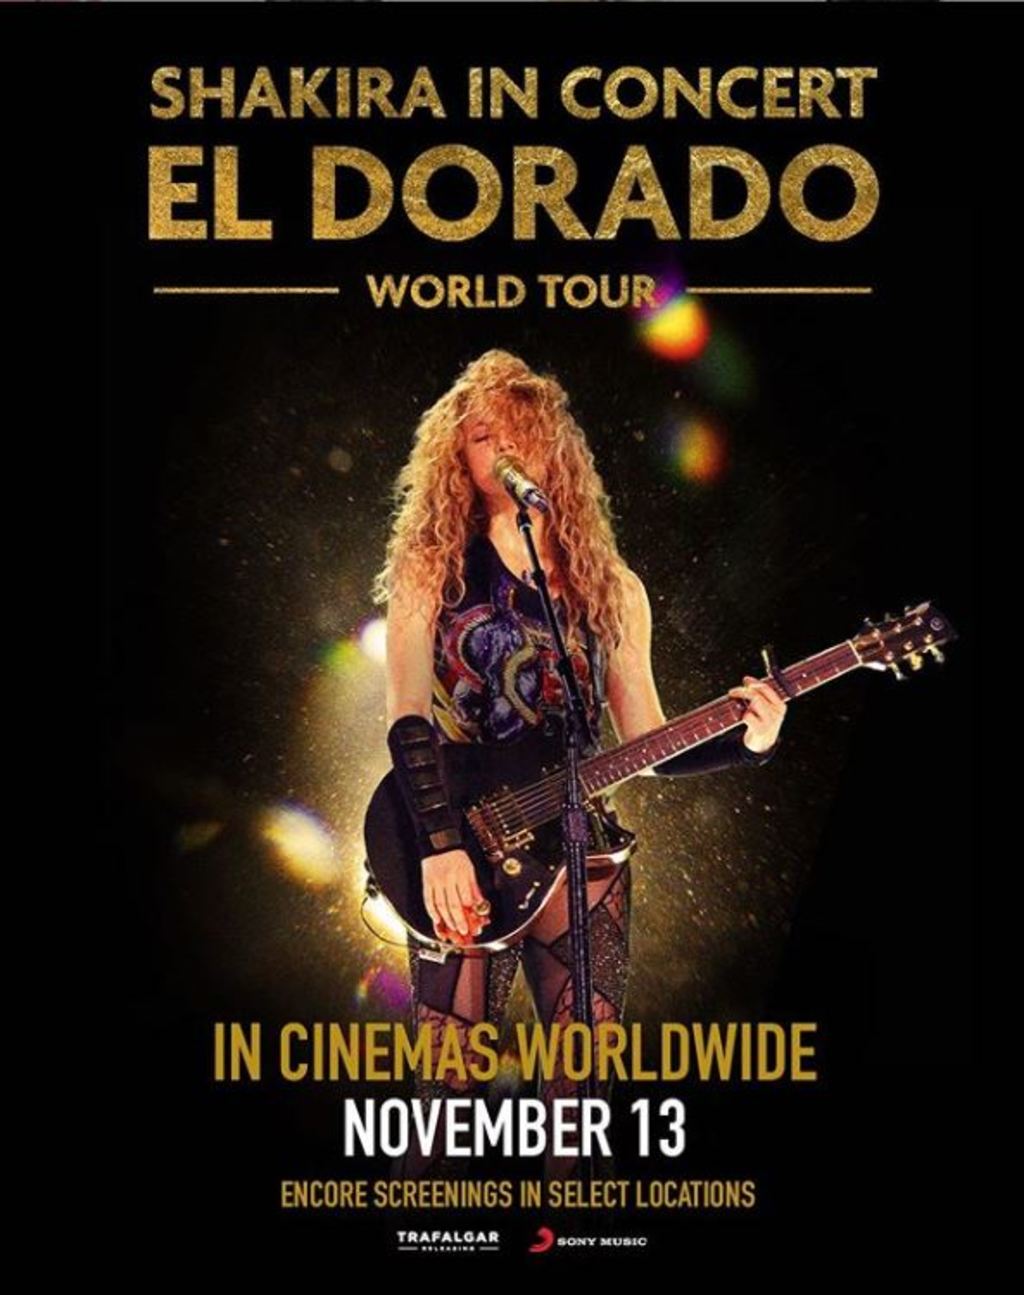 Cinta. Está dirigido por la propia Shakira y James Merryman e incluye escenas tras bambalinas de los conciertos. (ESPECIAL)